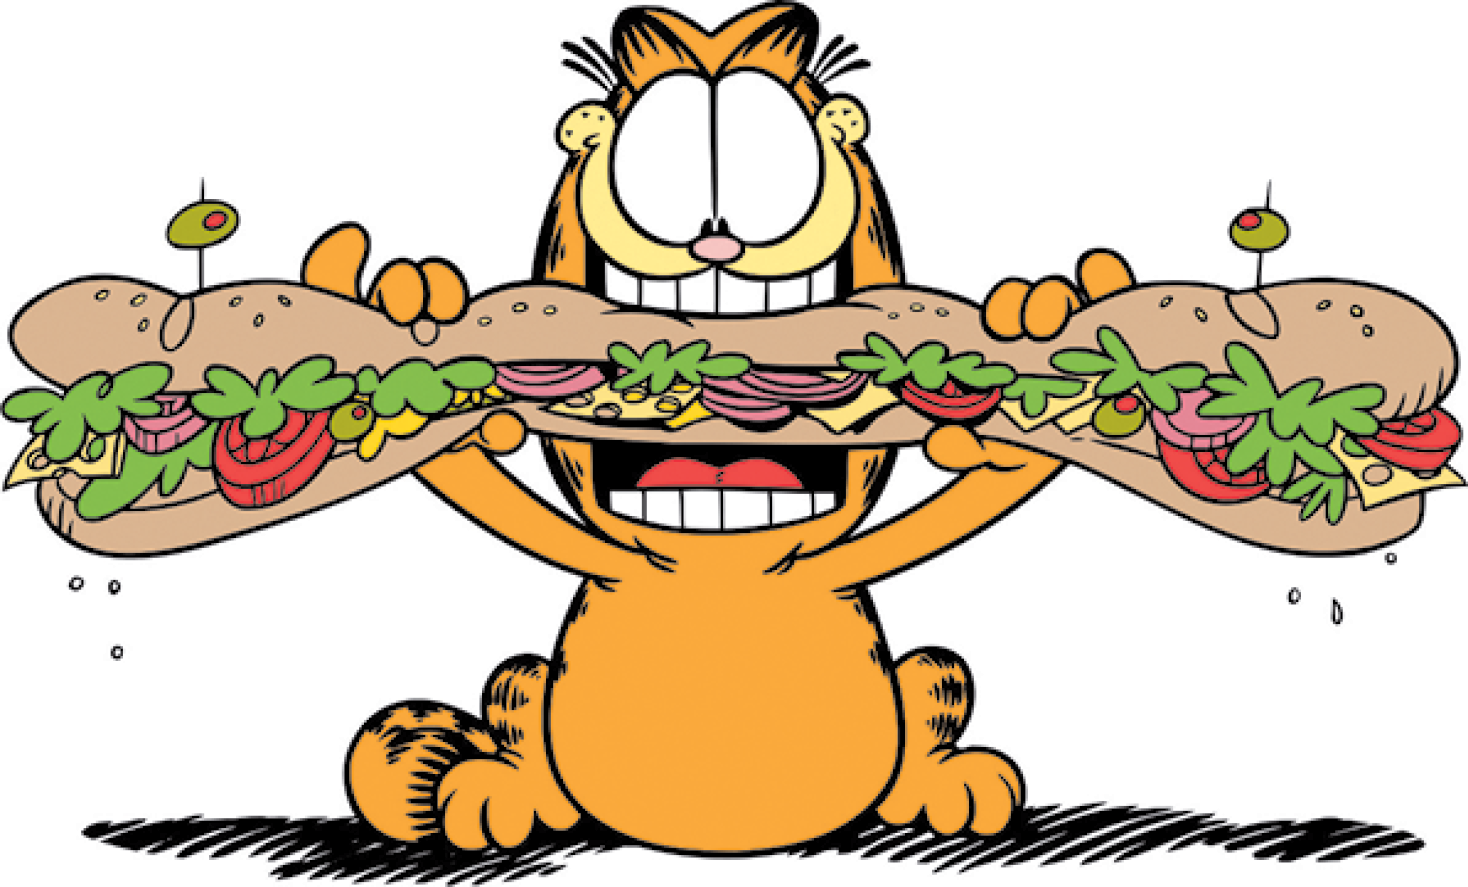 Ilustração. Garfield, gato de tamanho médio, de cor laranja, com os olhos grandes, arredondados, manchas em preto no rabo e no dorso do corpo. Ele está sentado, de frente, segurando as patas dianteiras um sanduíche grande de frente para a boca dele, bem aberta. O sanduíche está na horizontal, uma azeitona verde espetada em cada lado e, dentro, recheio com alface, tomates, queijo e pedaços de cebolas roxas.